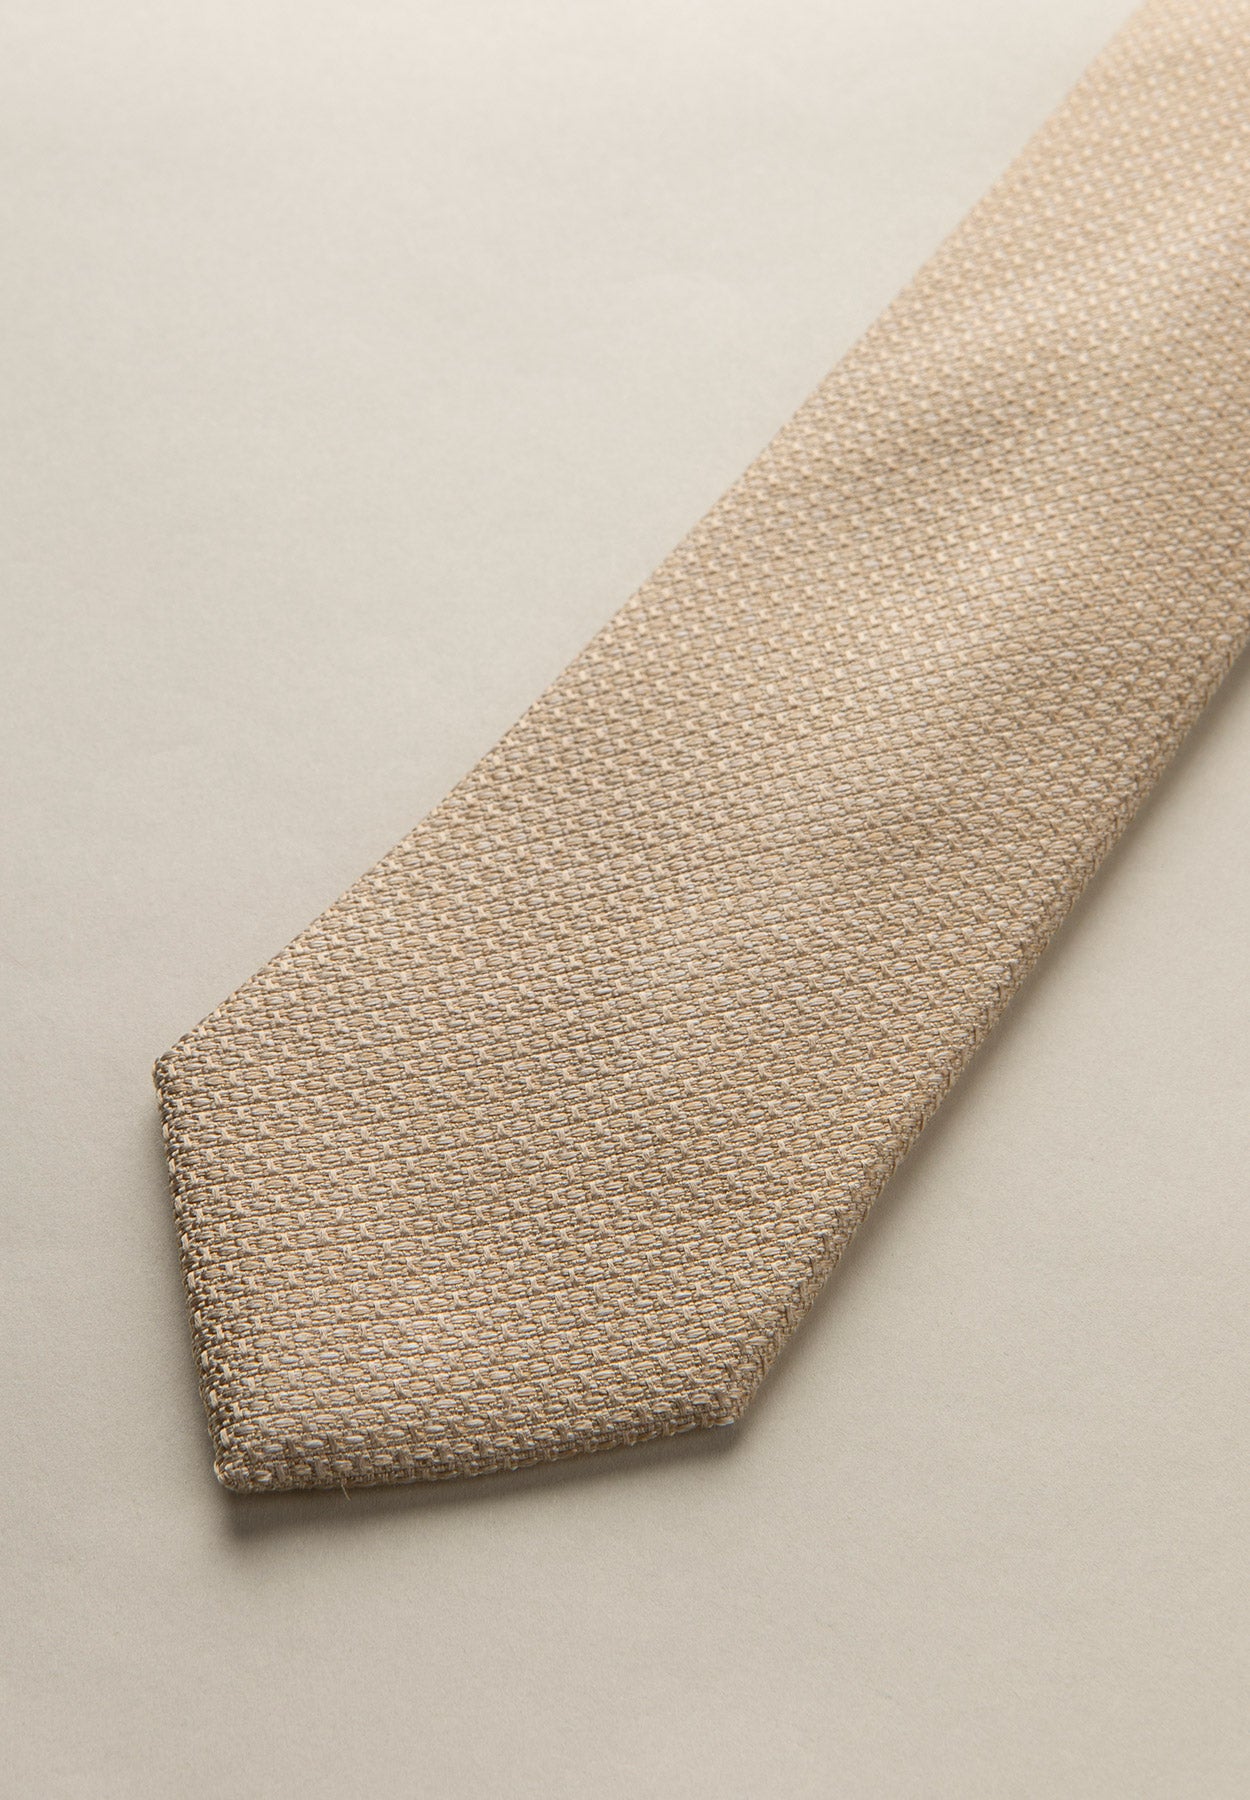 Beige tie with weave design silk-cotton